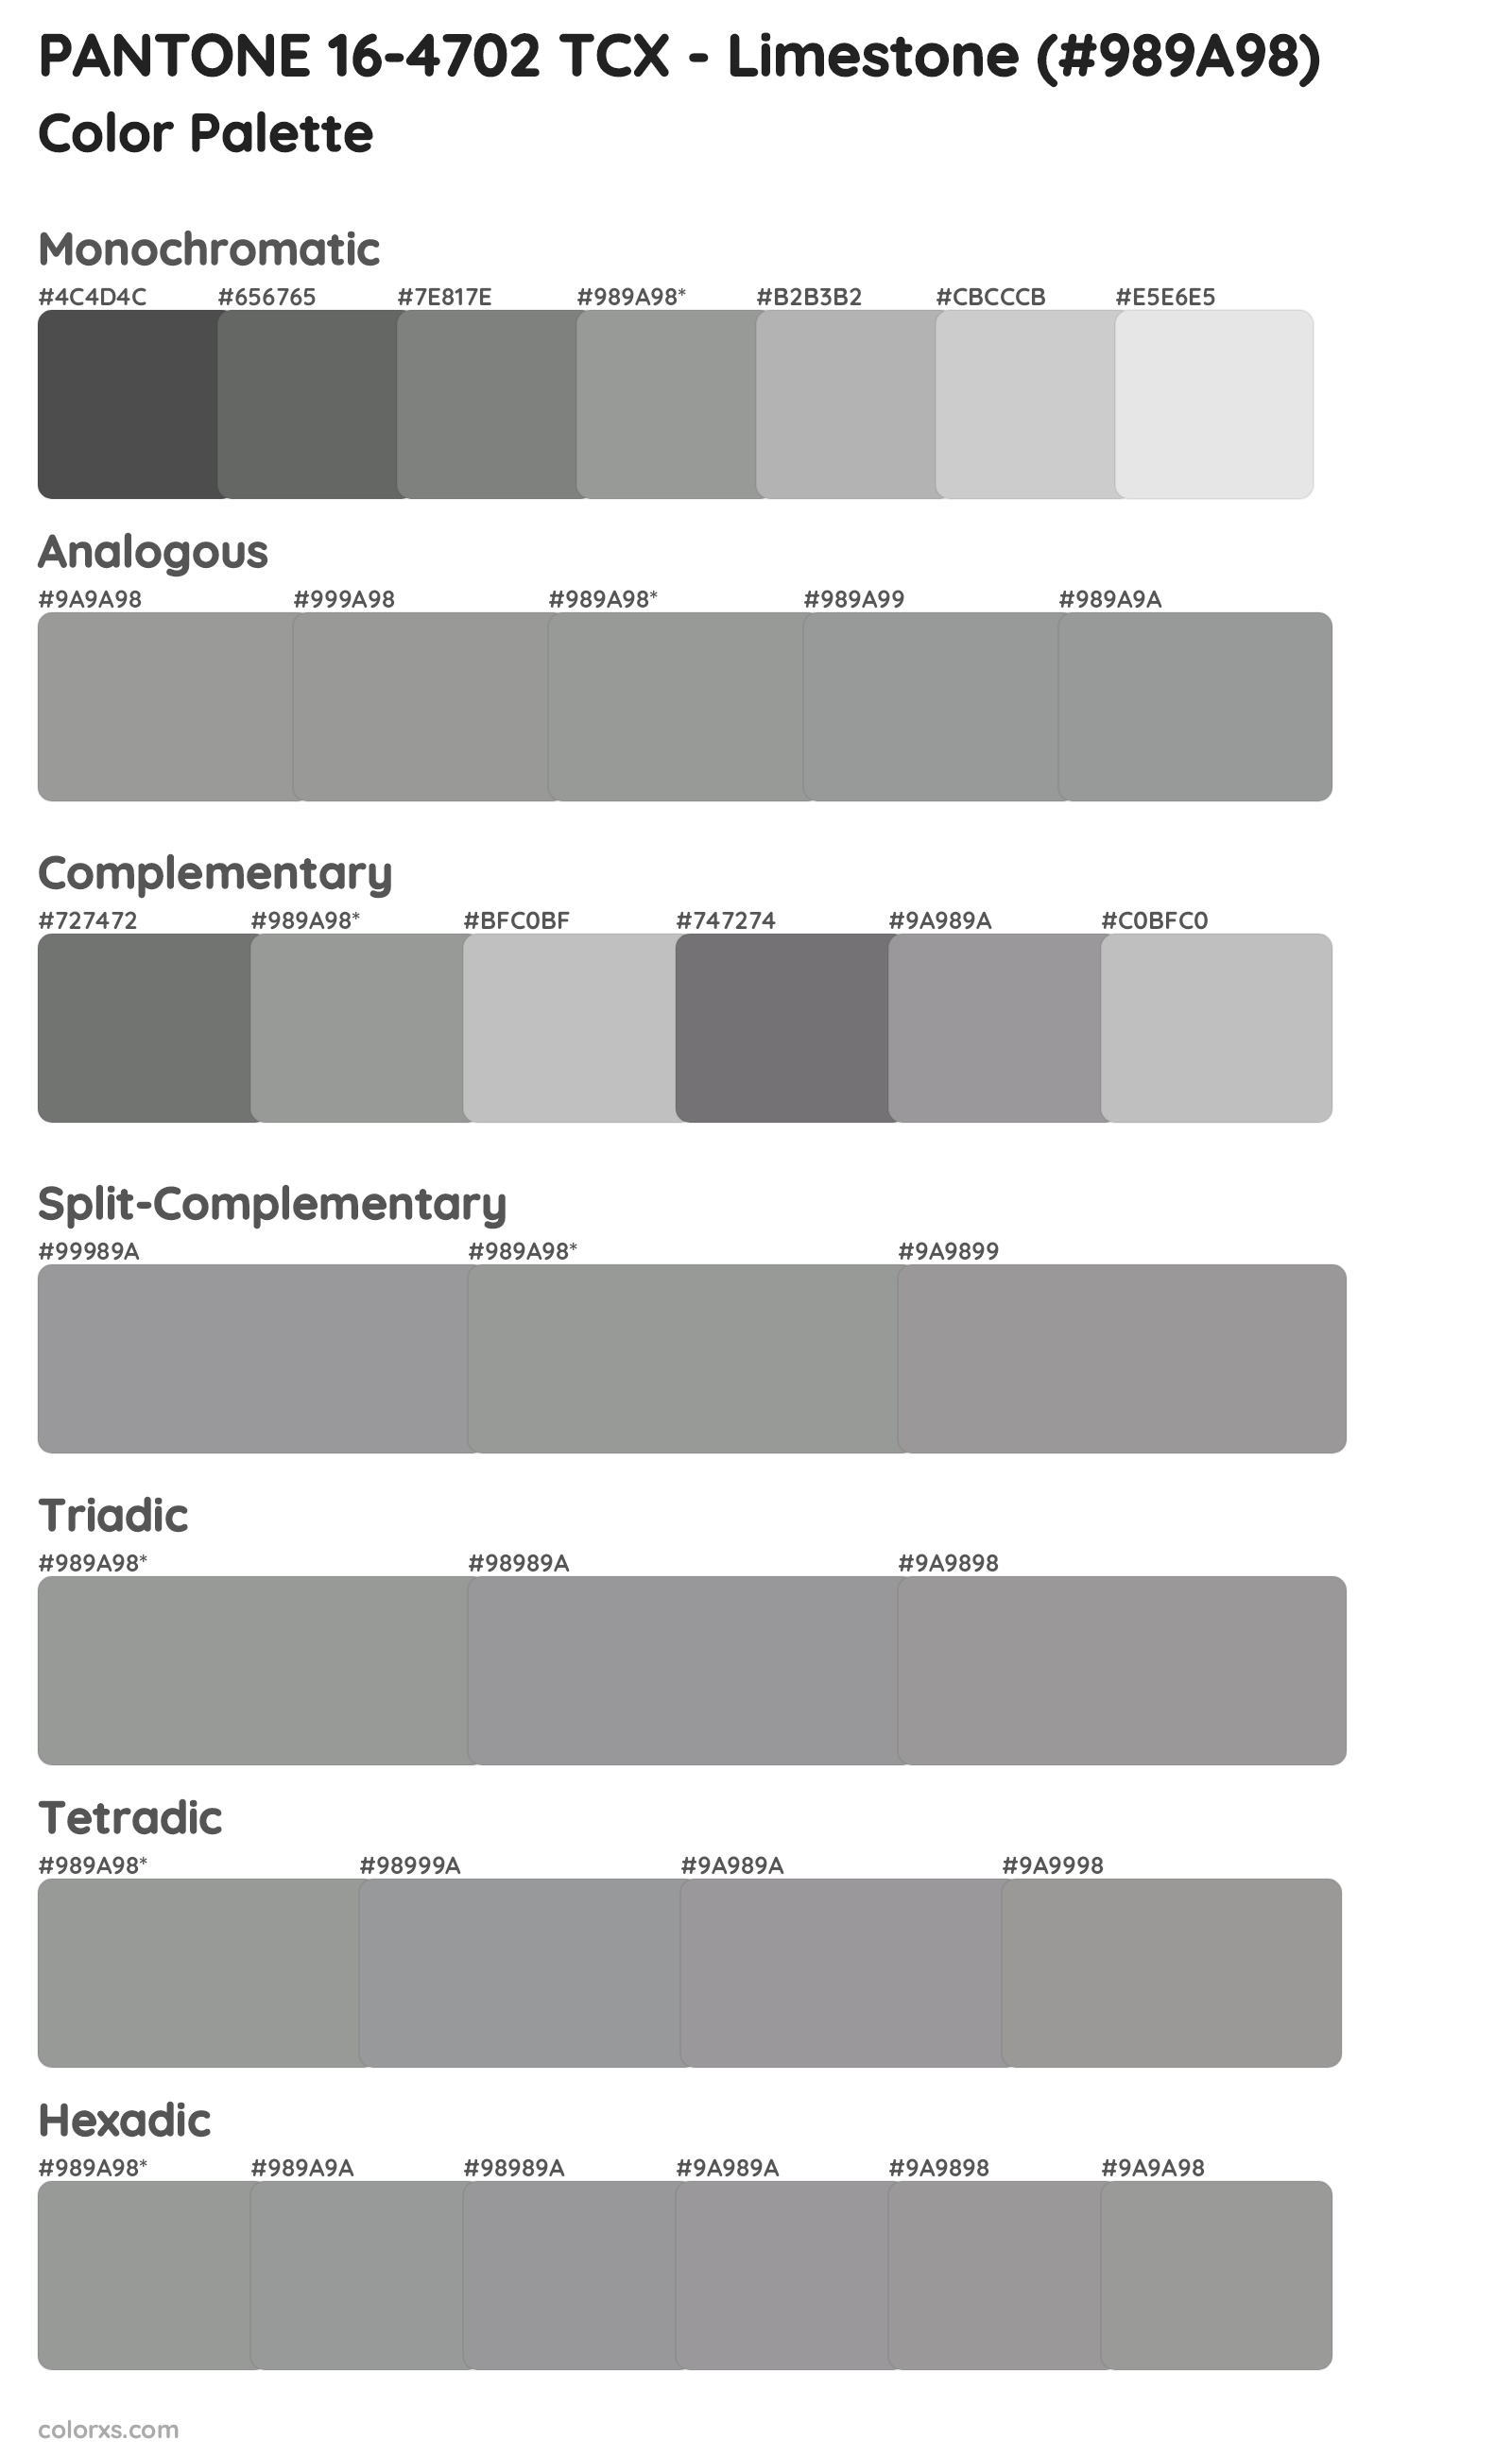 PANTONE 16-4702 TCX - Limestone Color Scheme Palettes